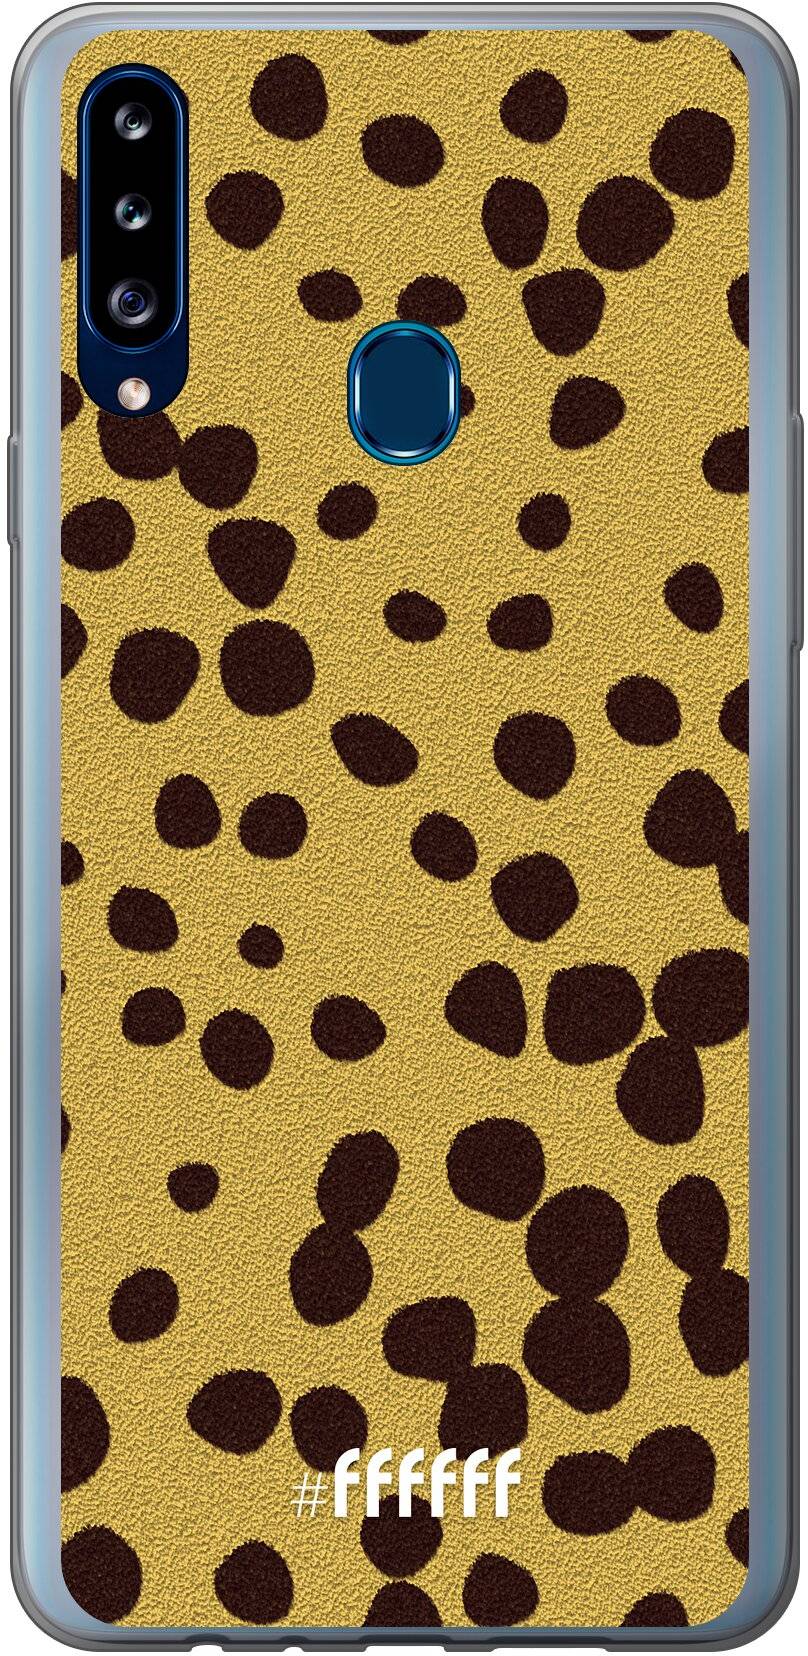 Cheetah Print Galaxy A20s